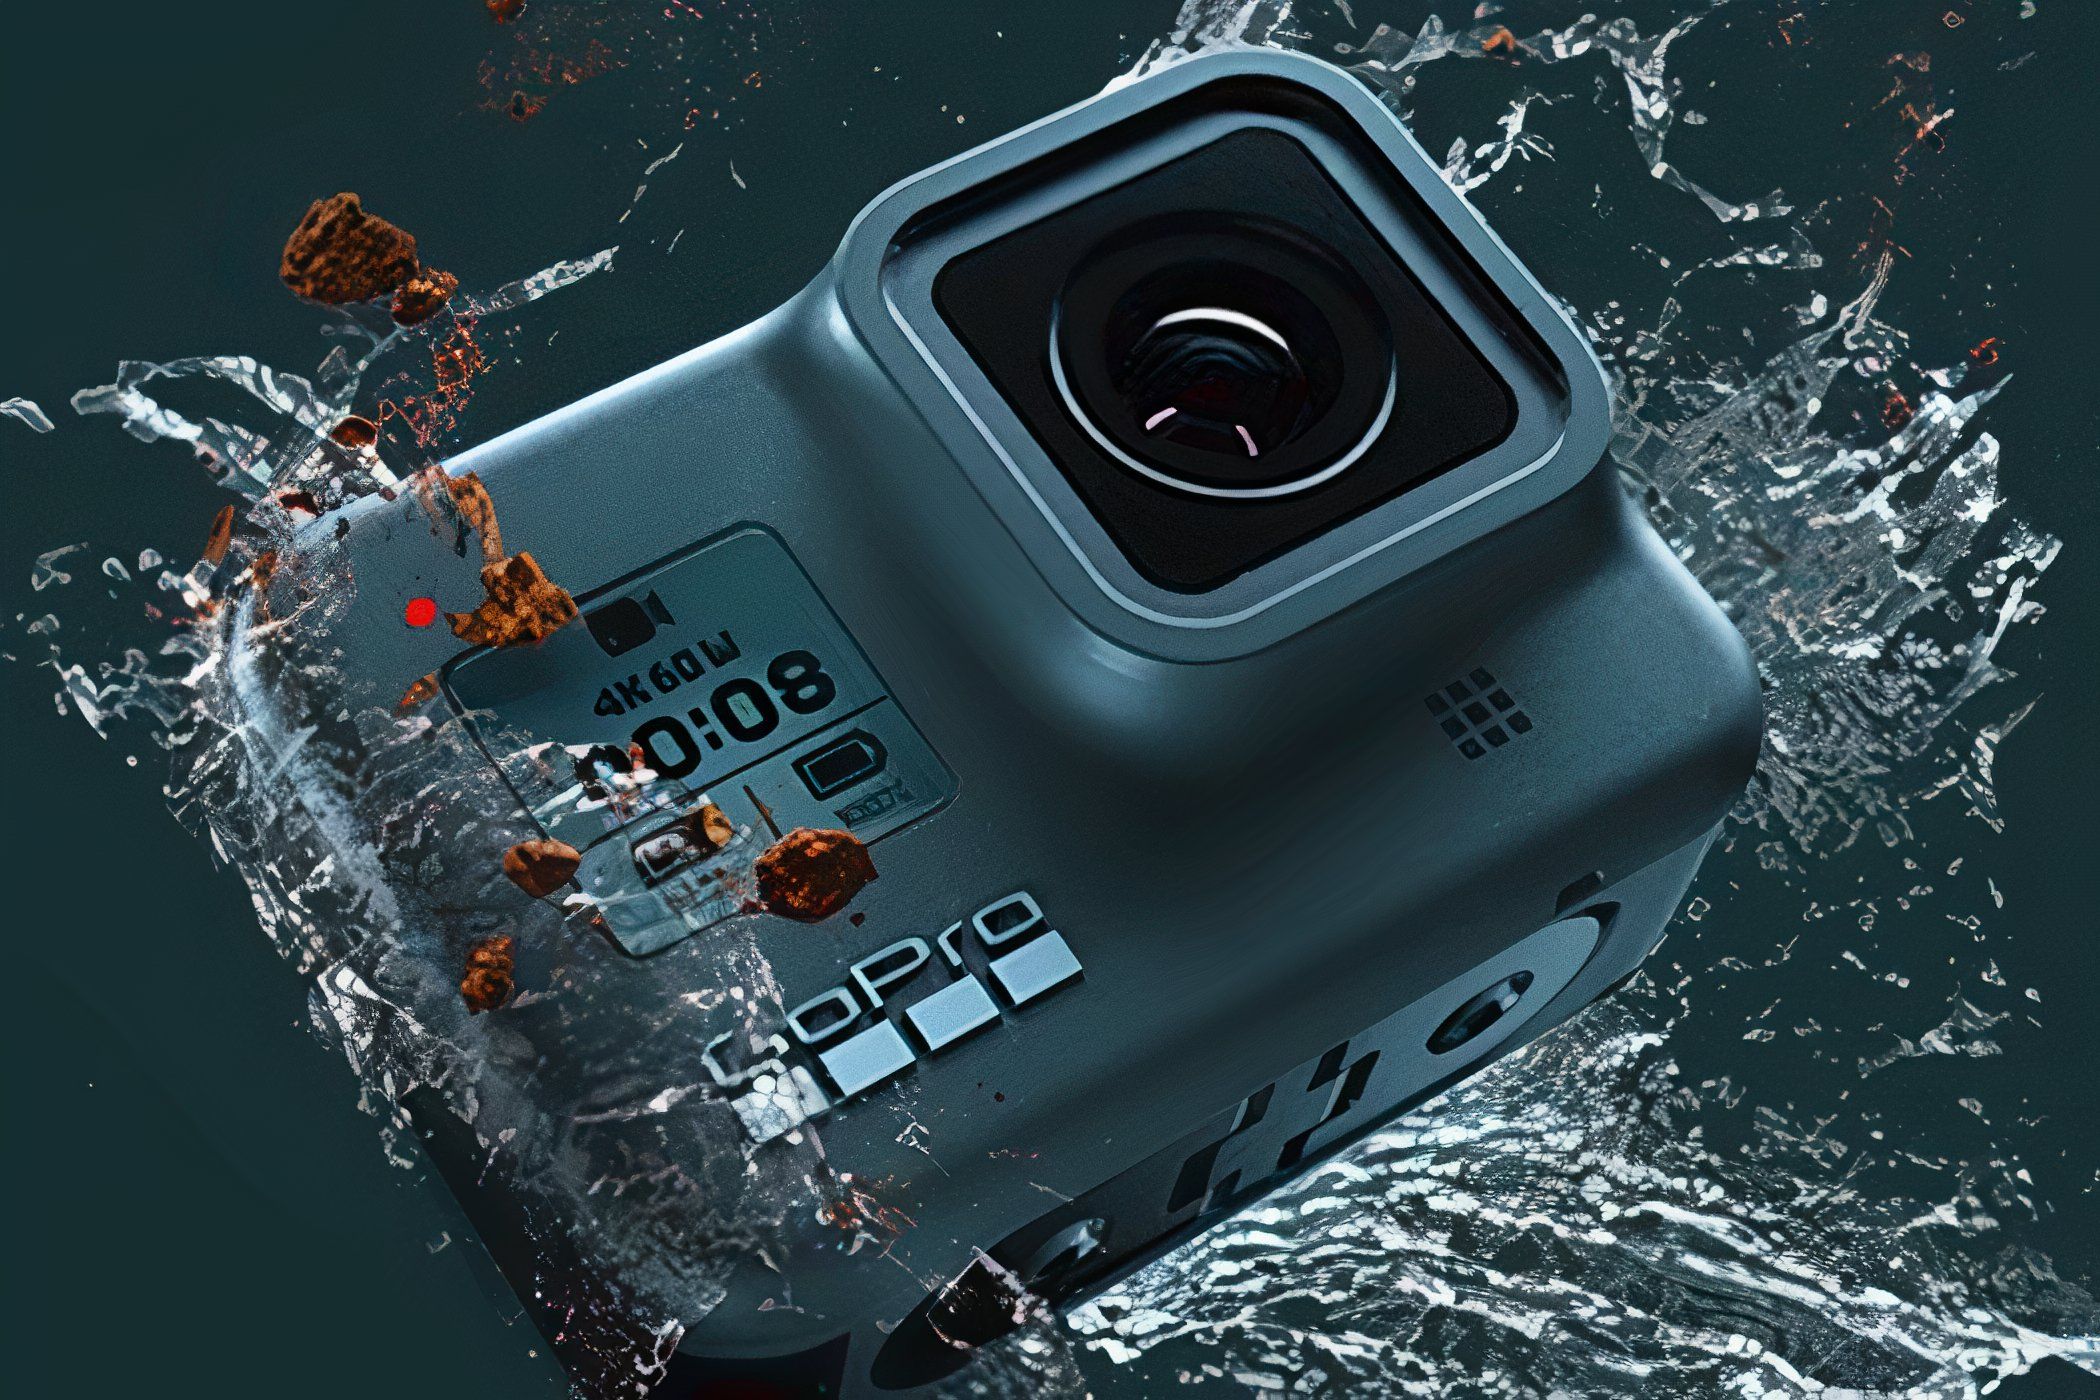 A GoPro HERO8 Black splashing in the water.